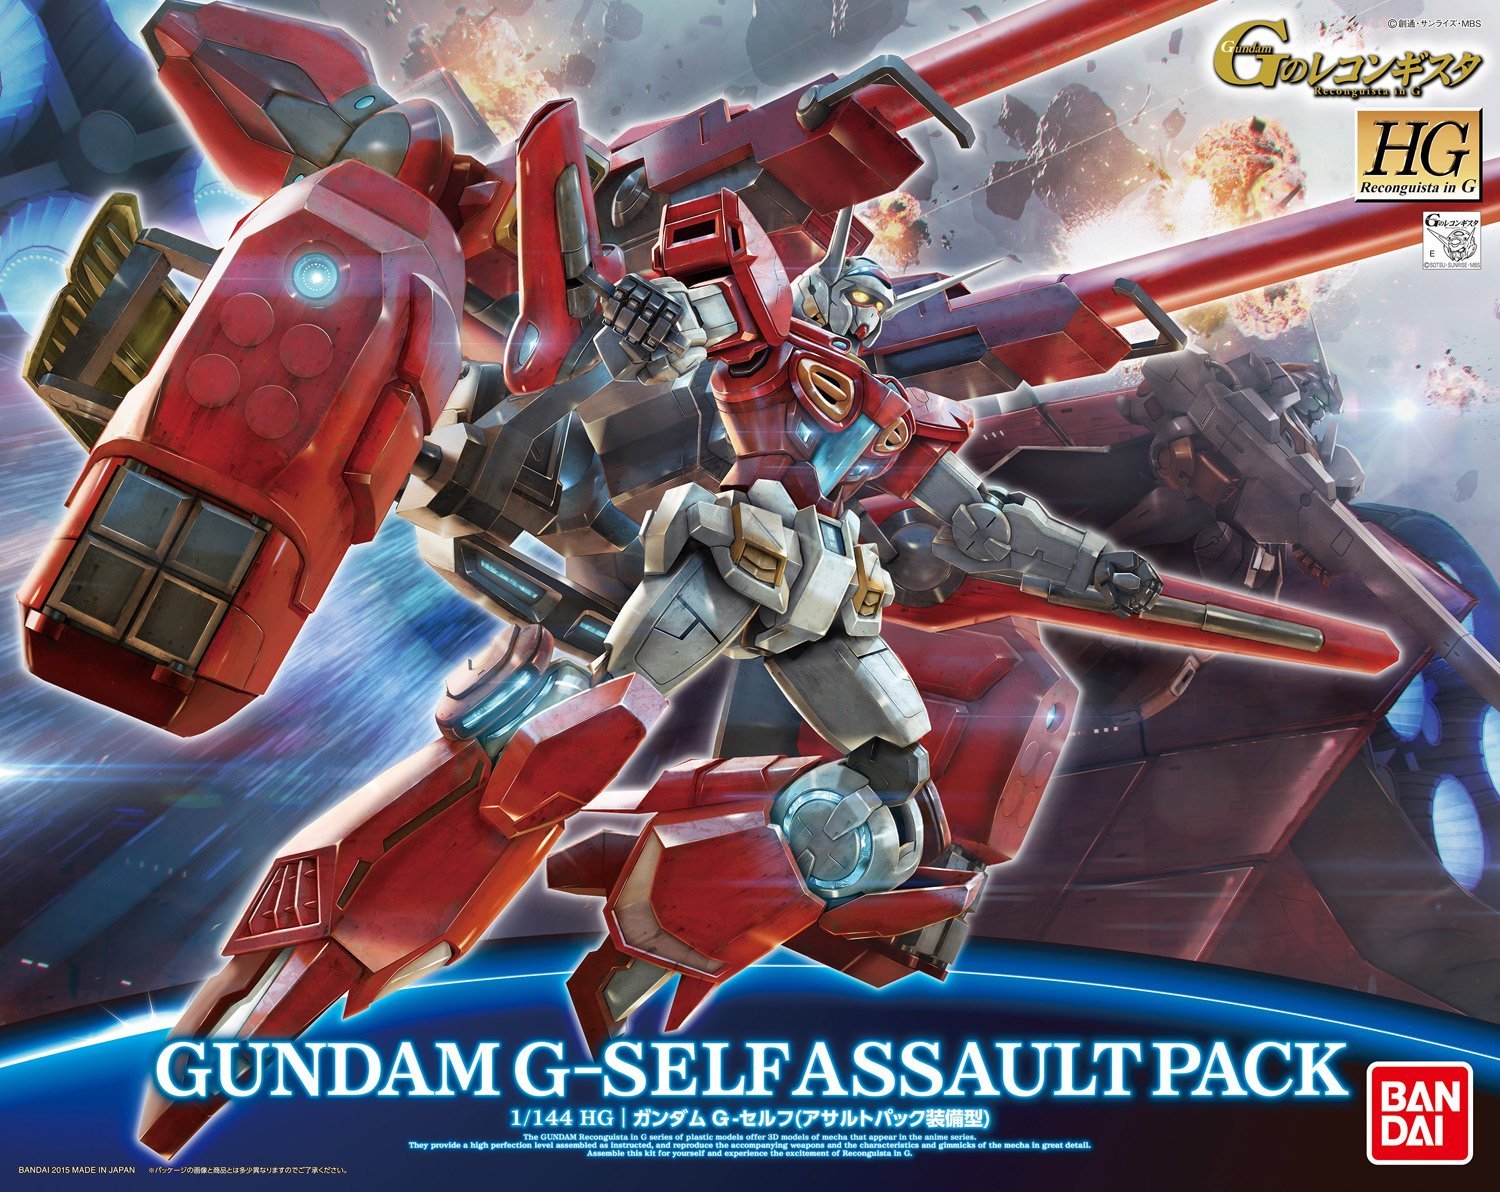 Gundam High Grade Reconguista in G: Gundam G-Self with Assault Pack 